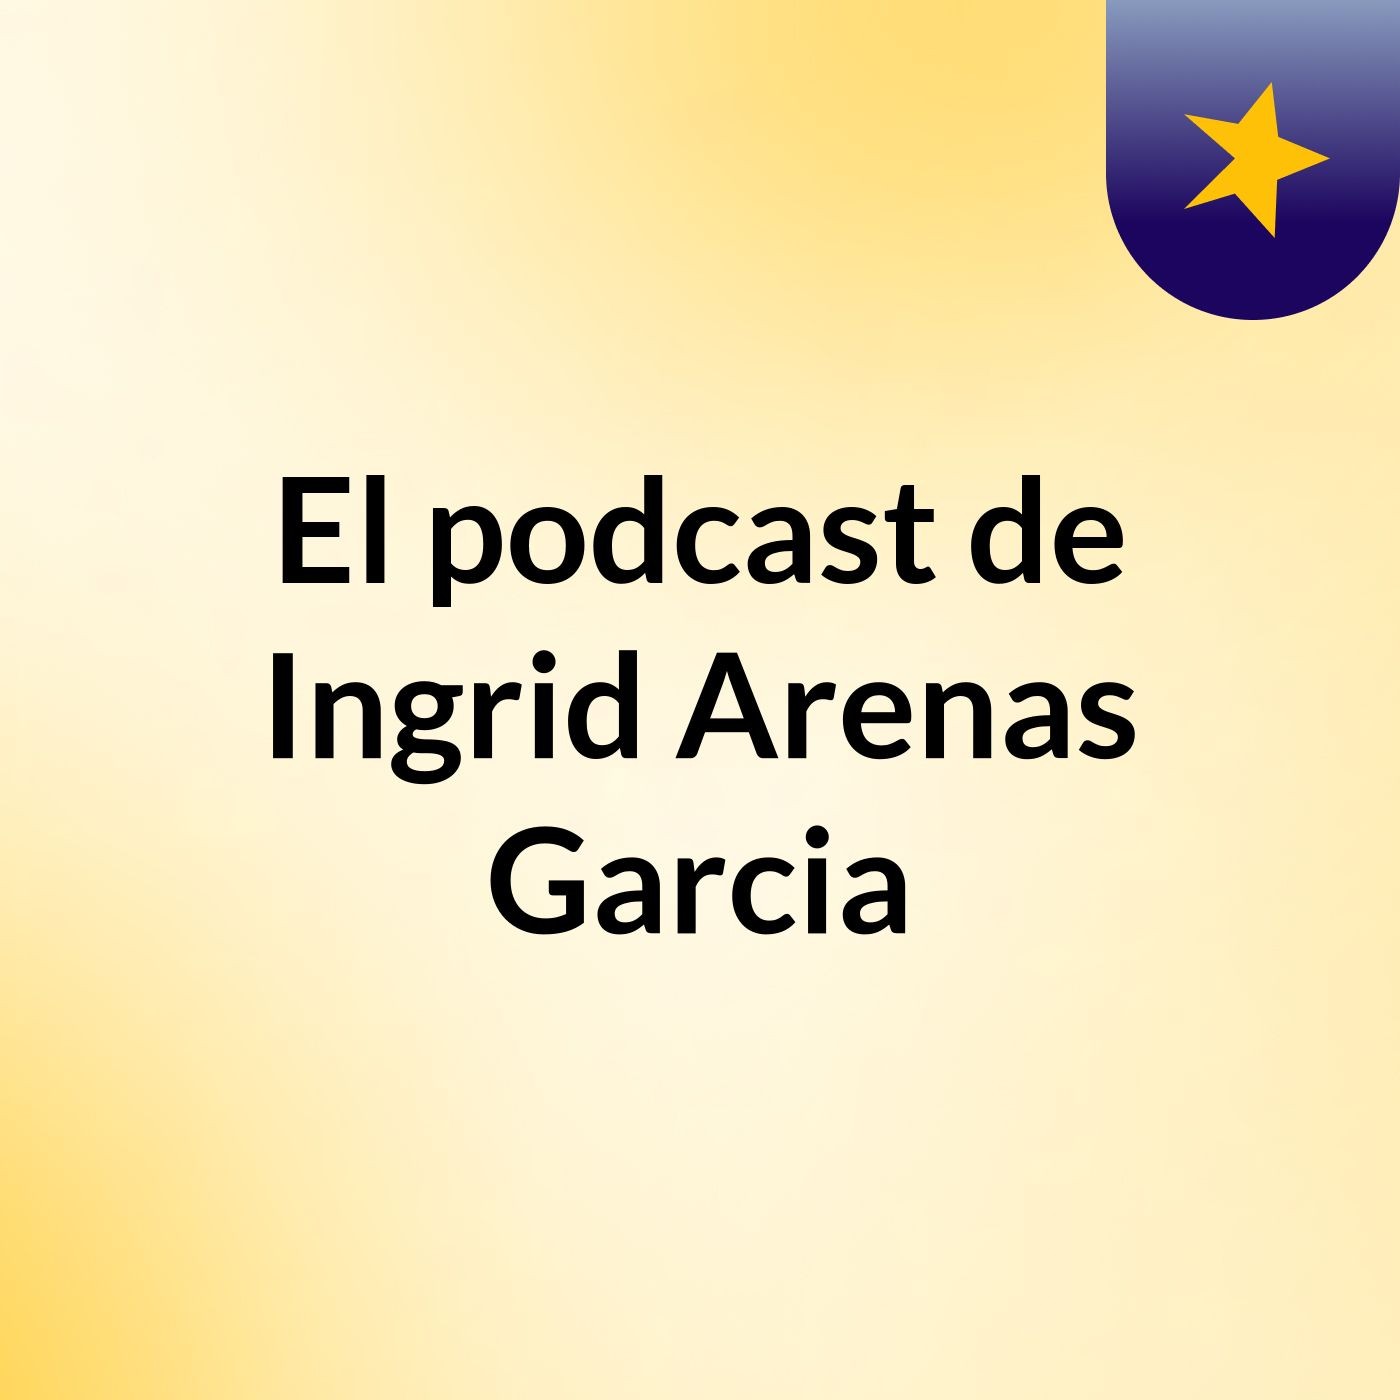 El podcast de Ingrid Arenas Garcia